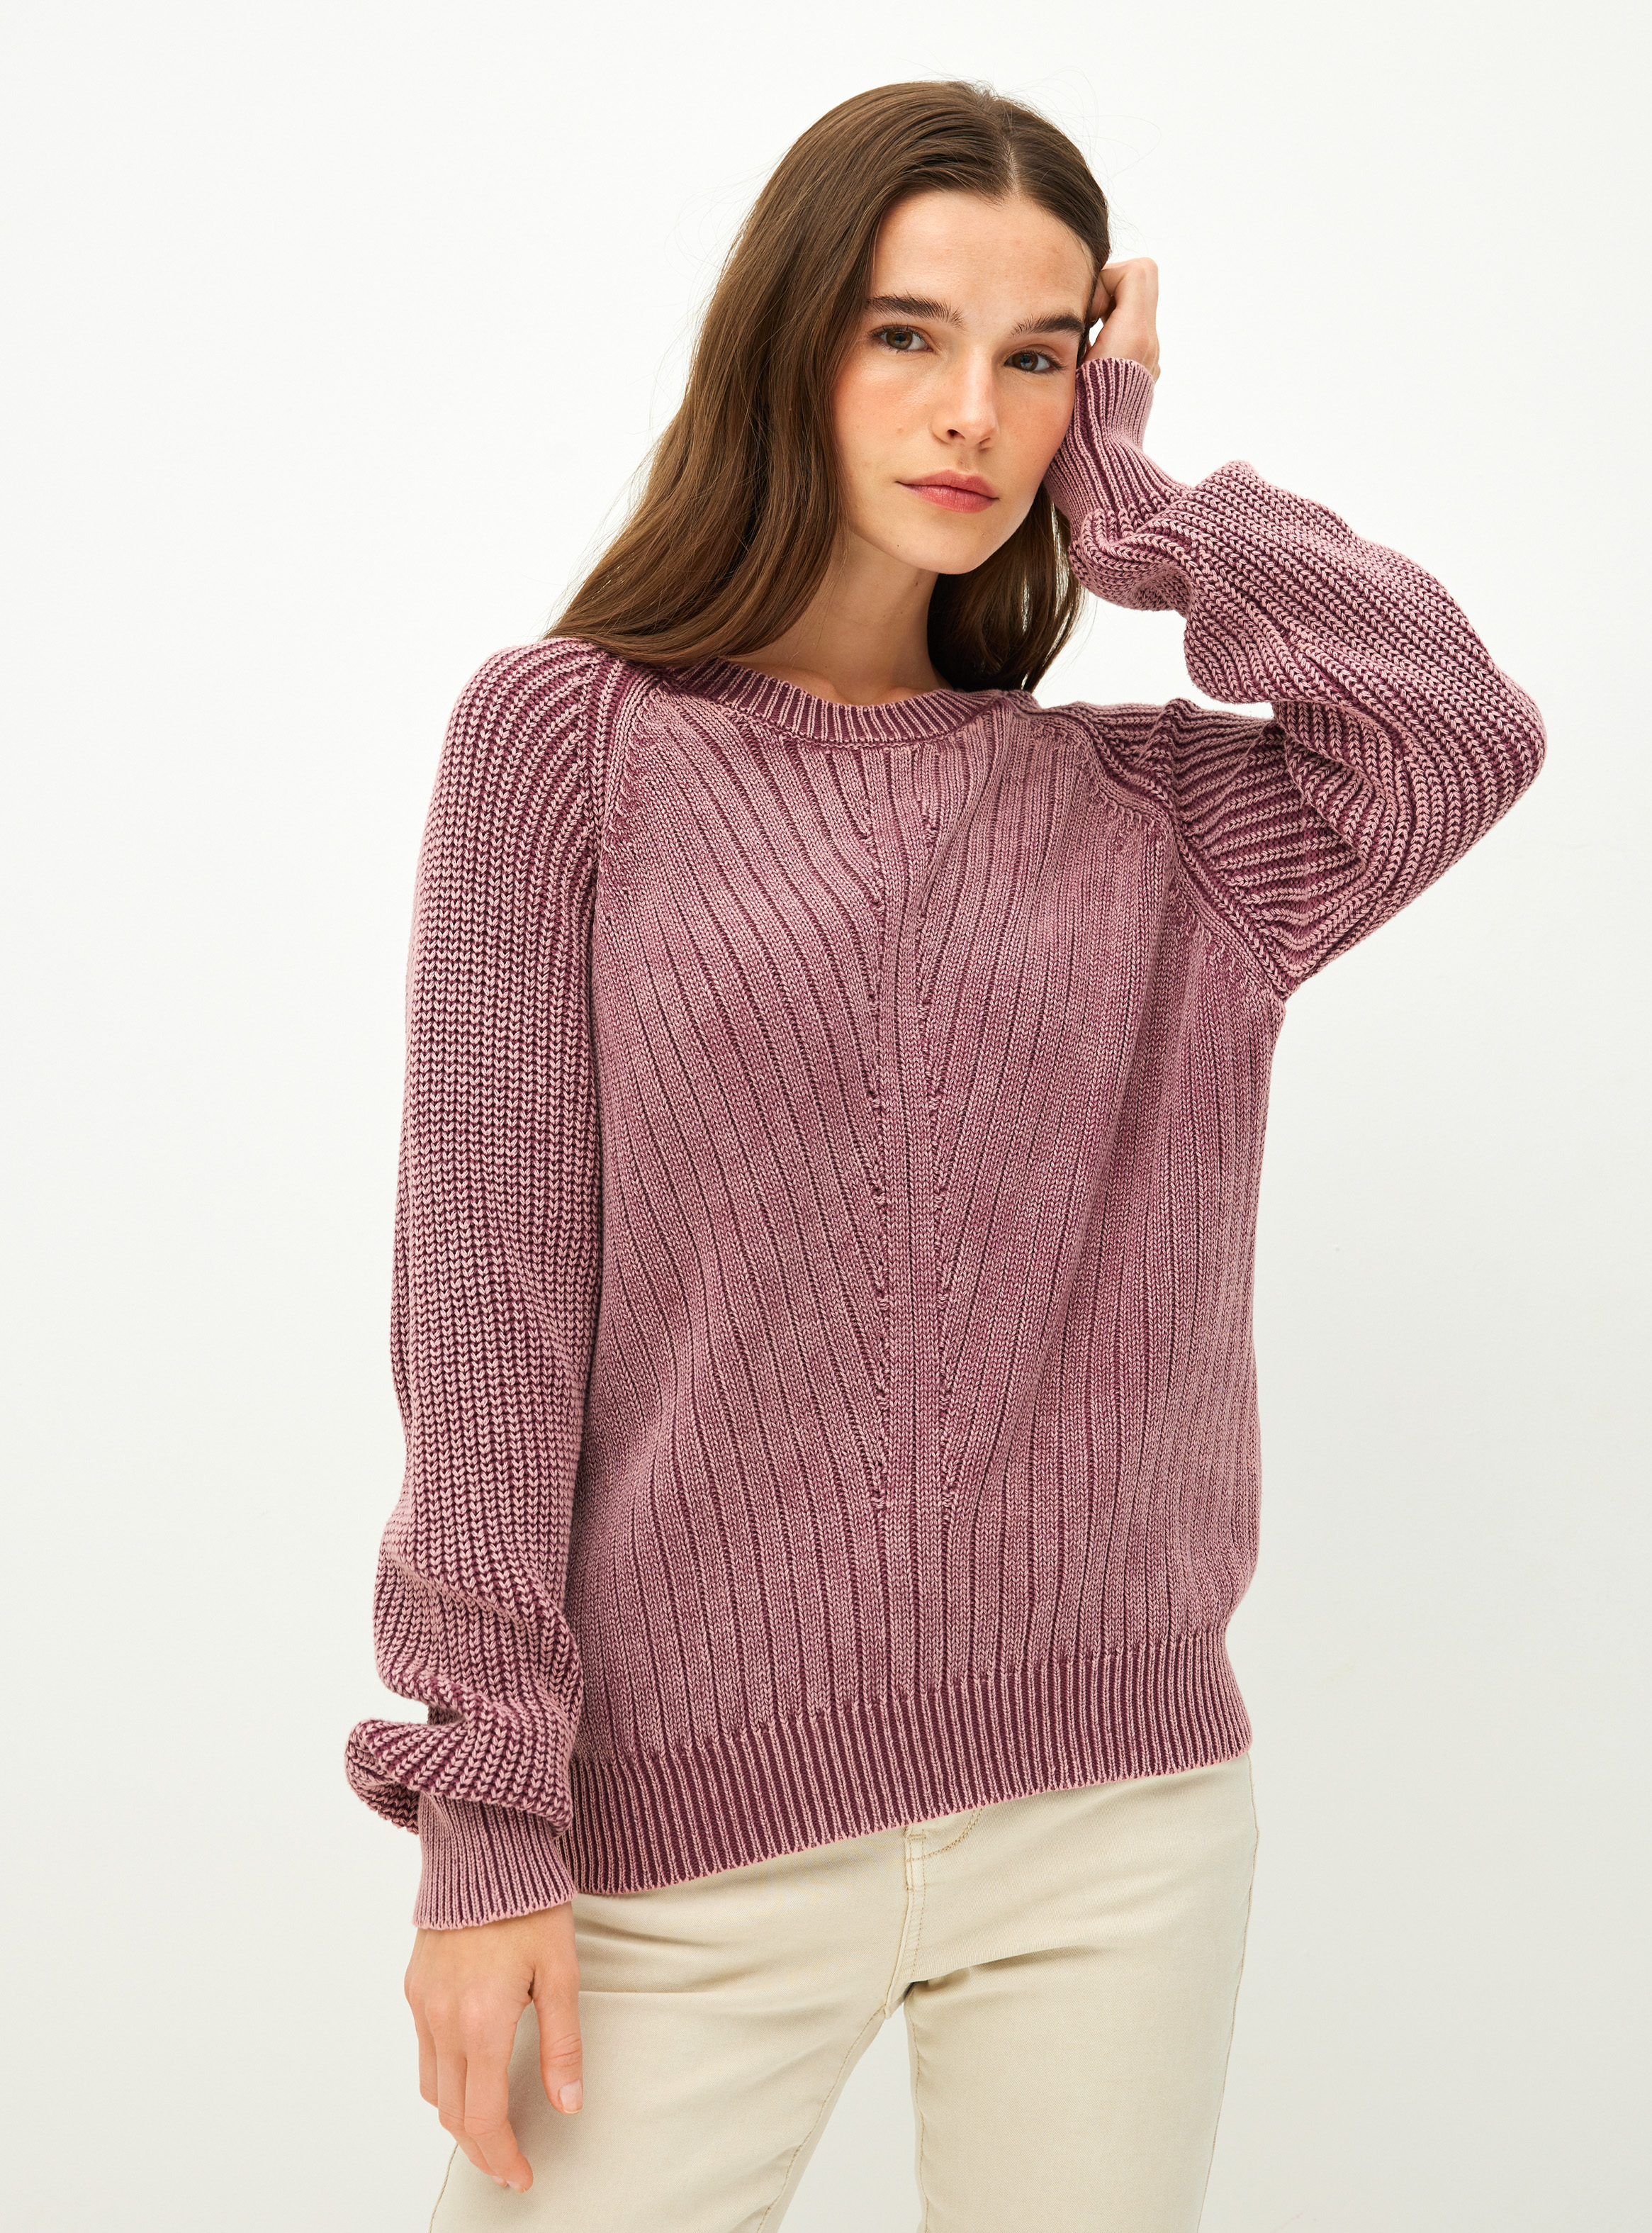 Sweater con Proceso De Teñido